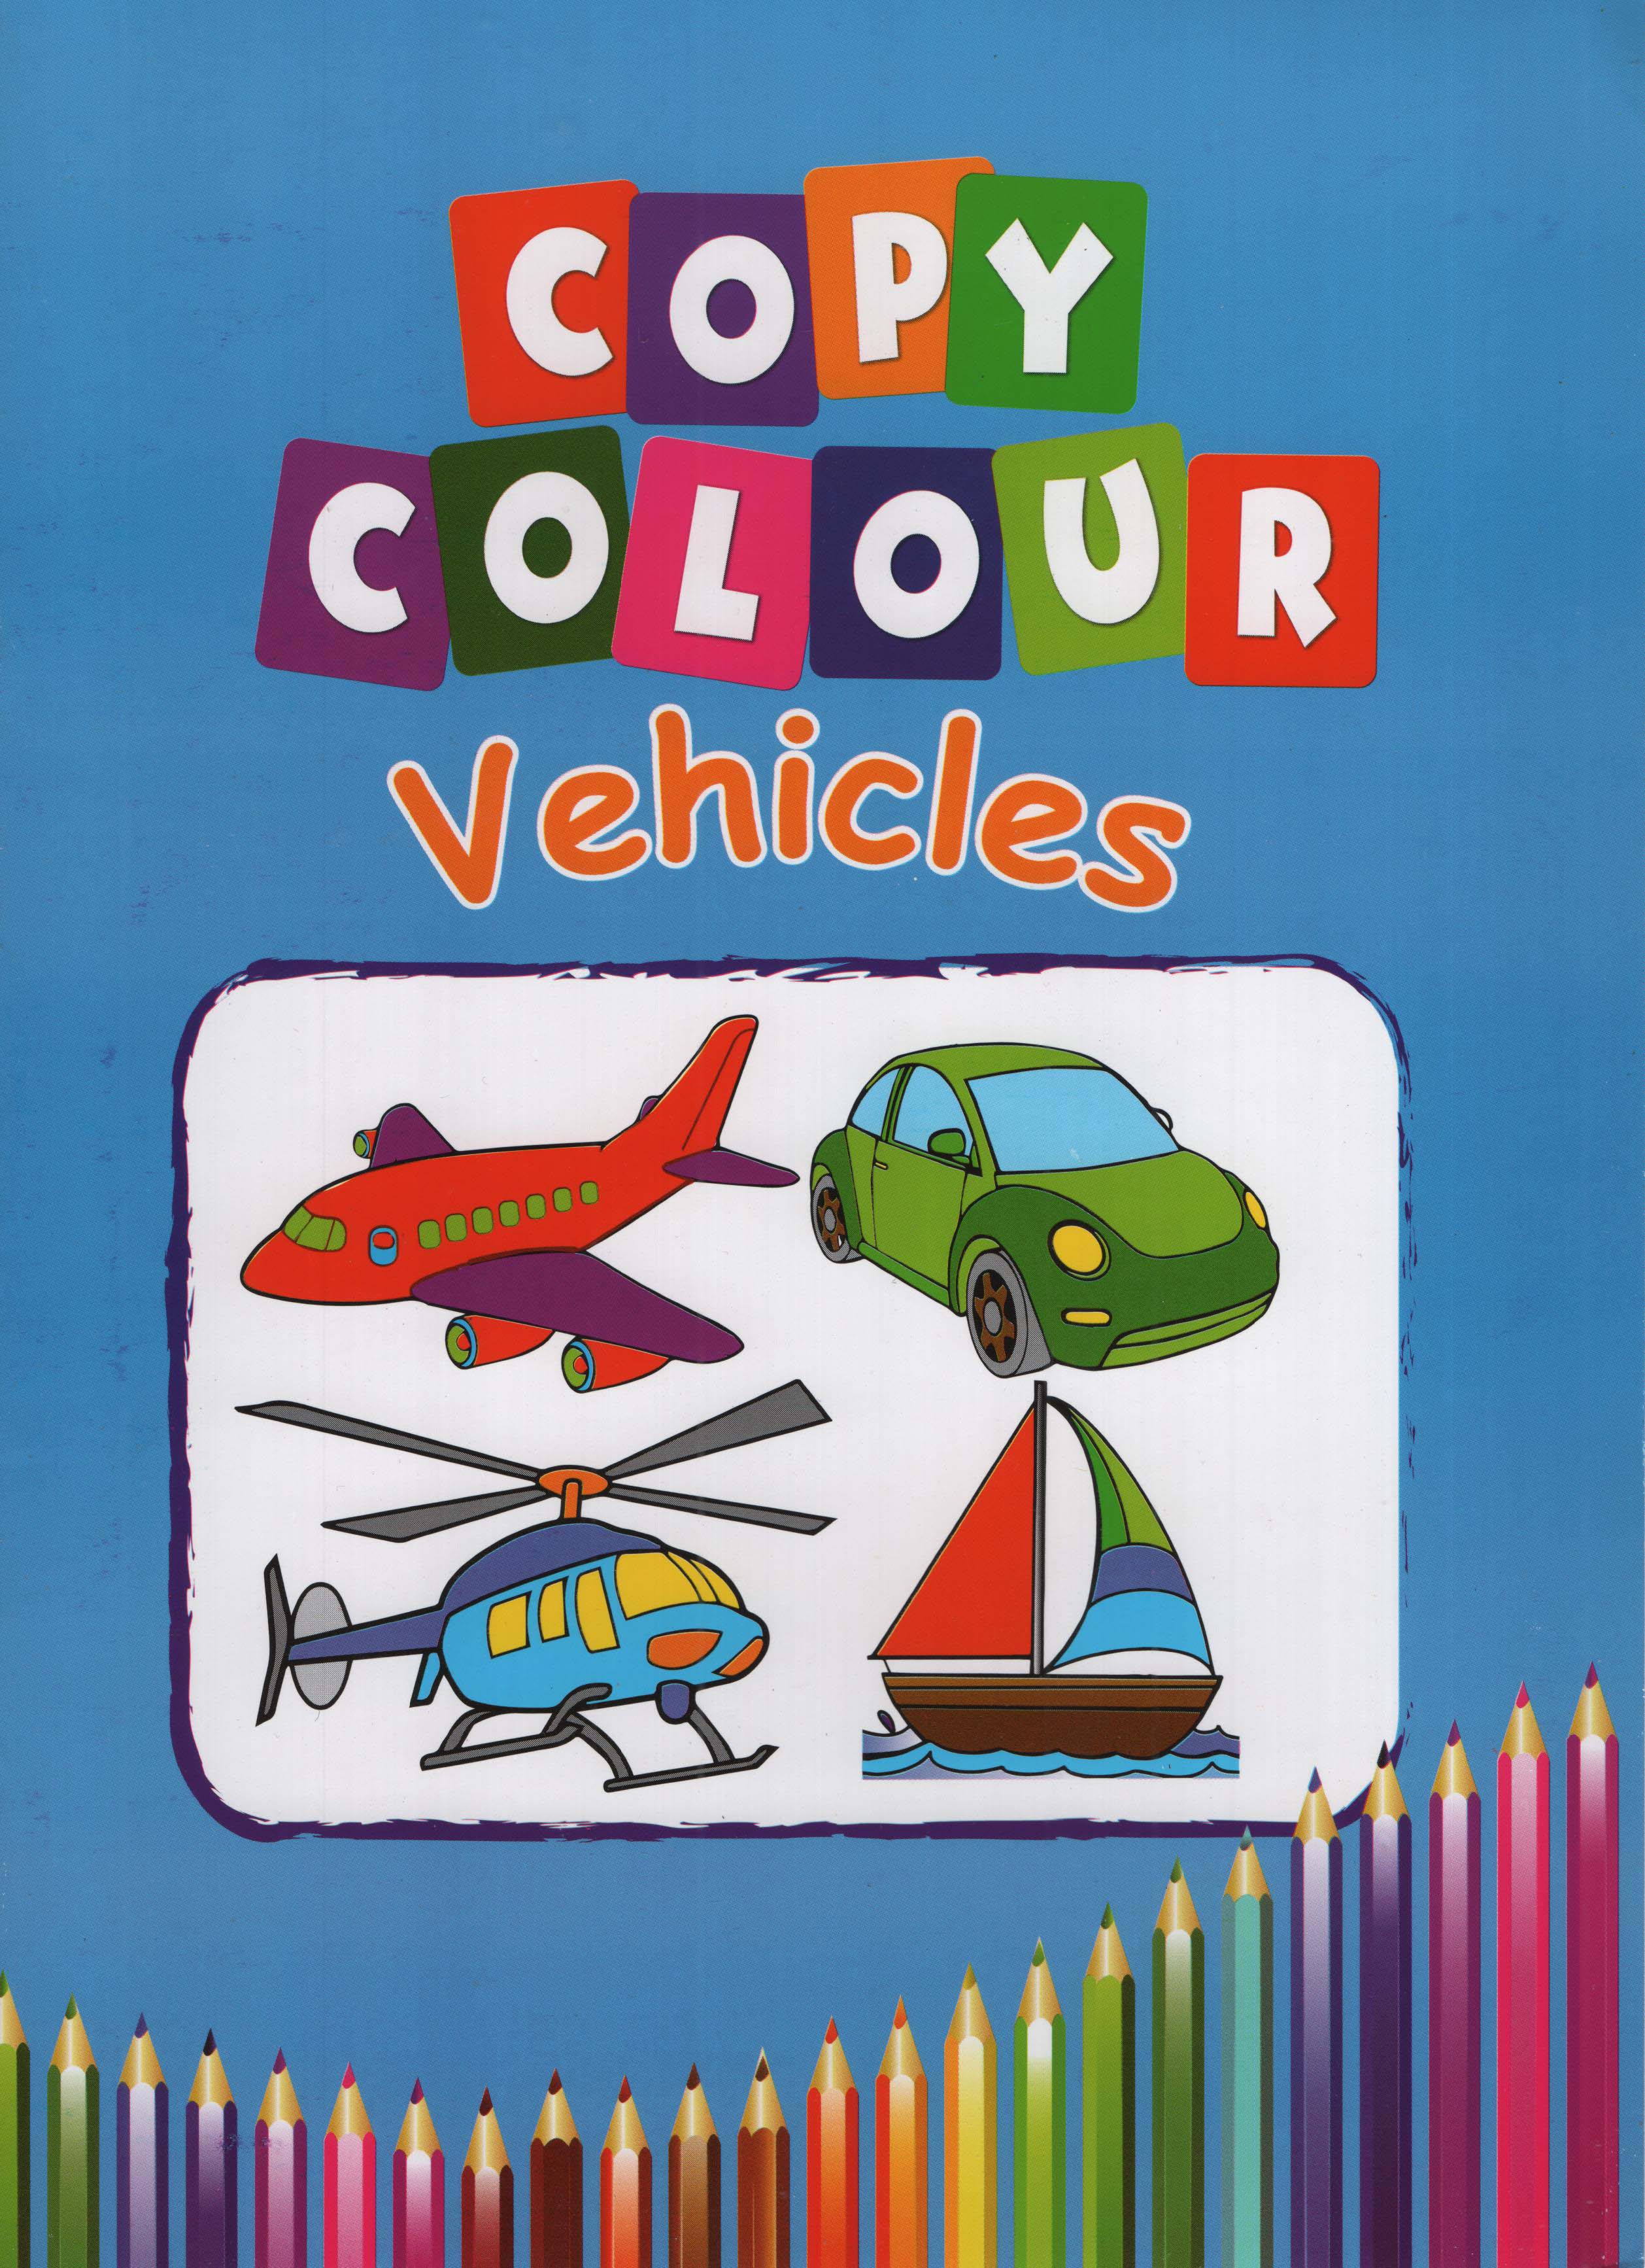 Copy Colour Vehicles